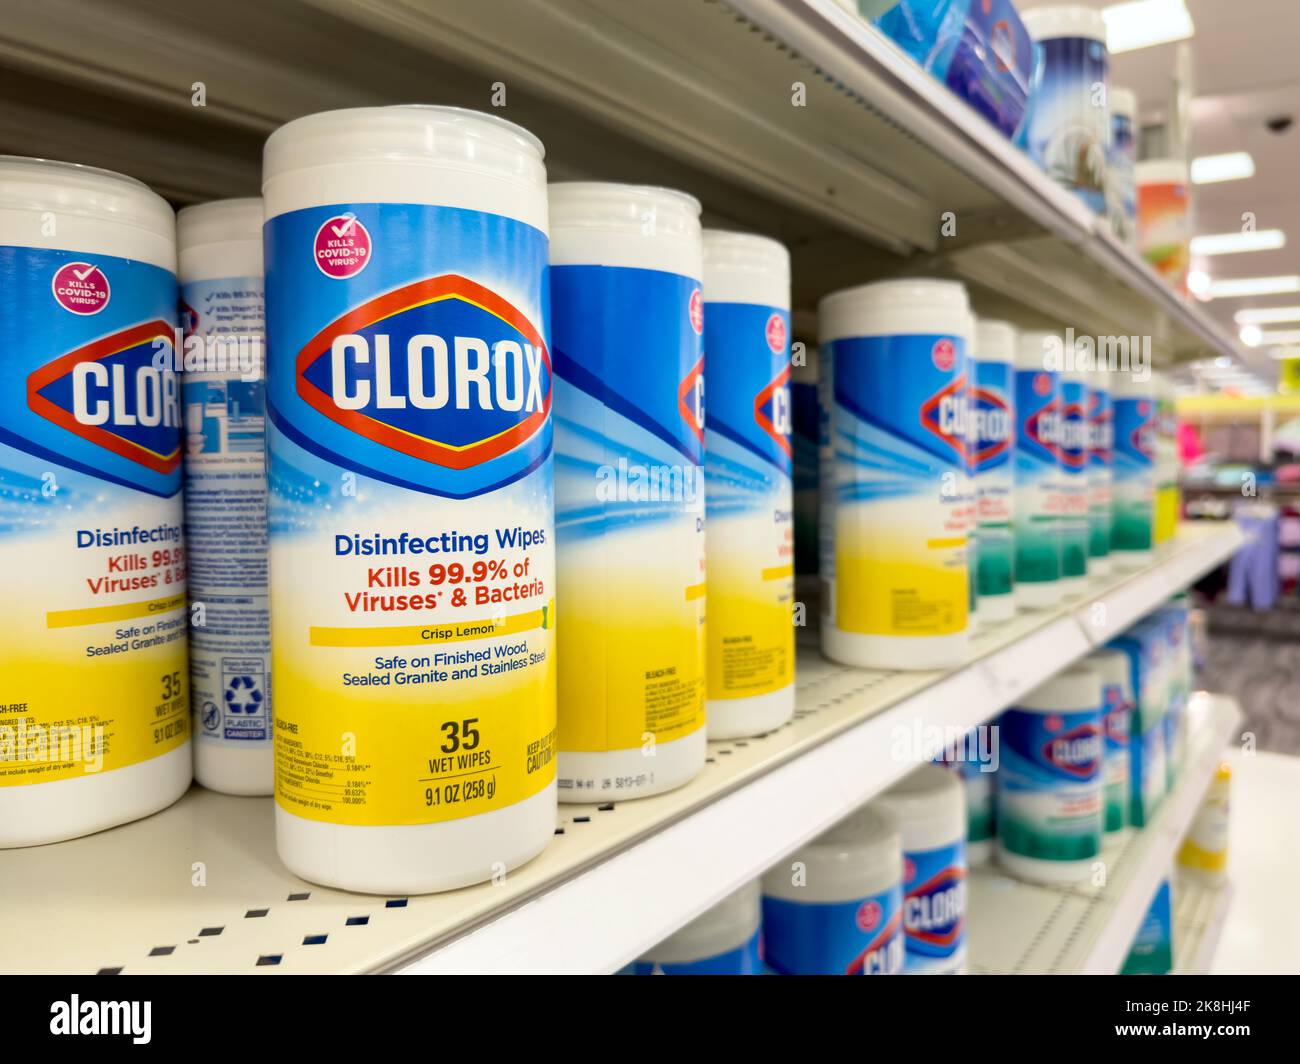 SALVIETTE disinfettanti CLOROX sul ripiano espositore. Clorox è prodotto dalla Clorox Company. Foto Stock